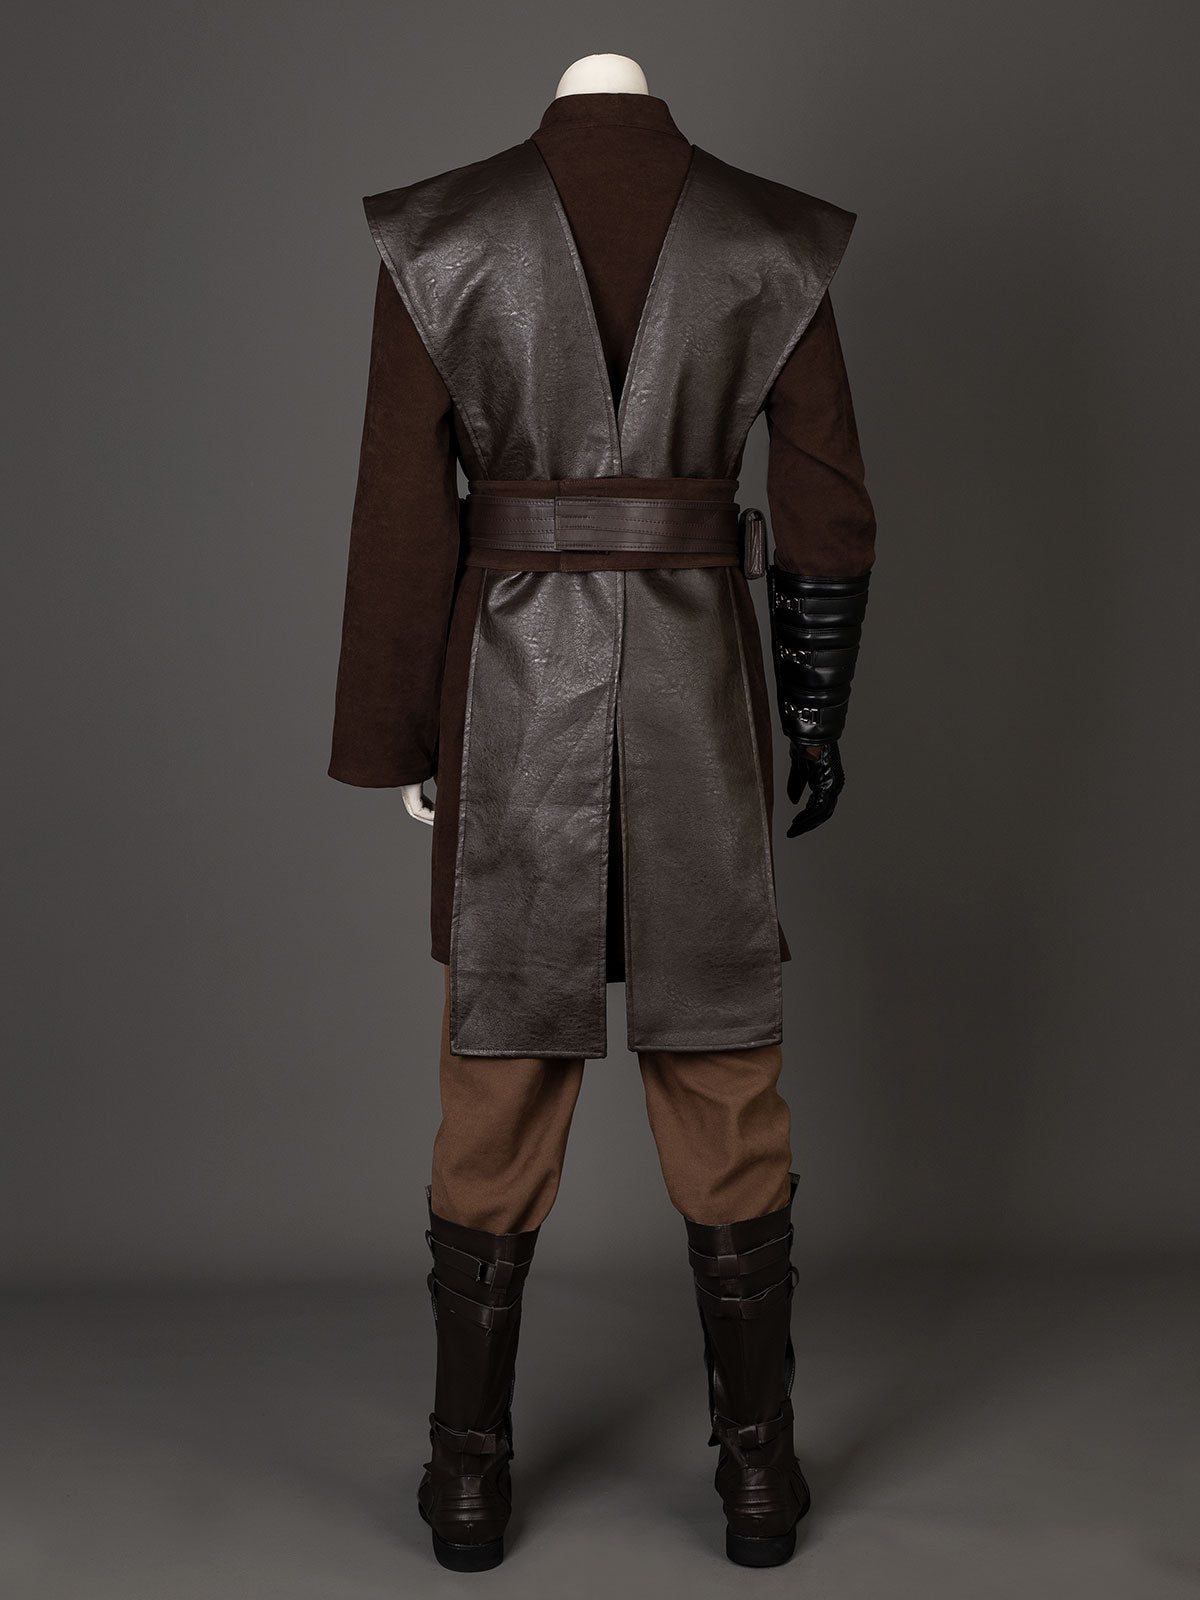 Star Wars：Episode II-Attack of the Clones Anakin Skywalker Cosplay Costume C08387